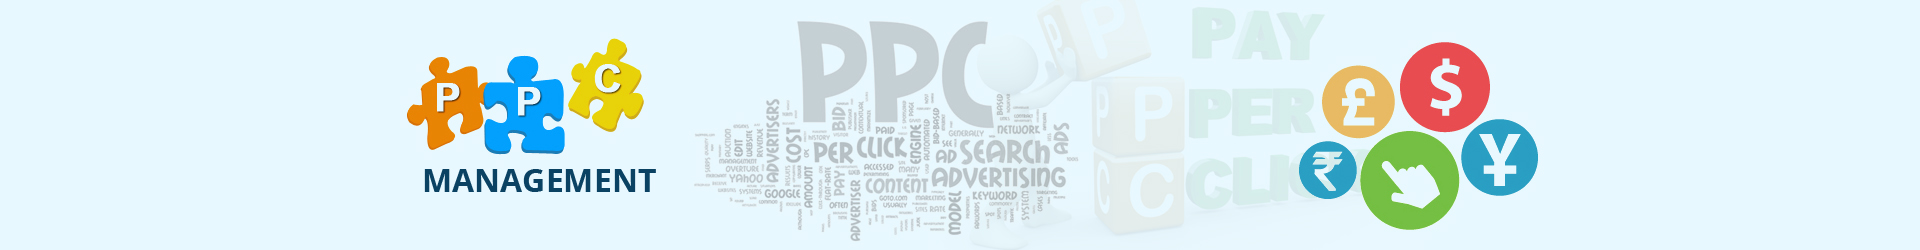 PPC Campaign Management Services,pay per click  management